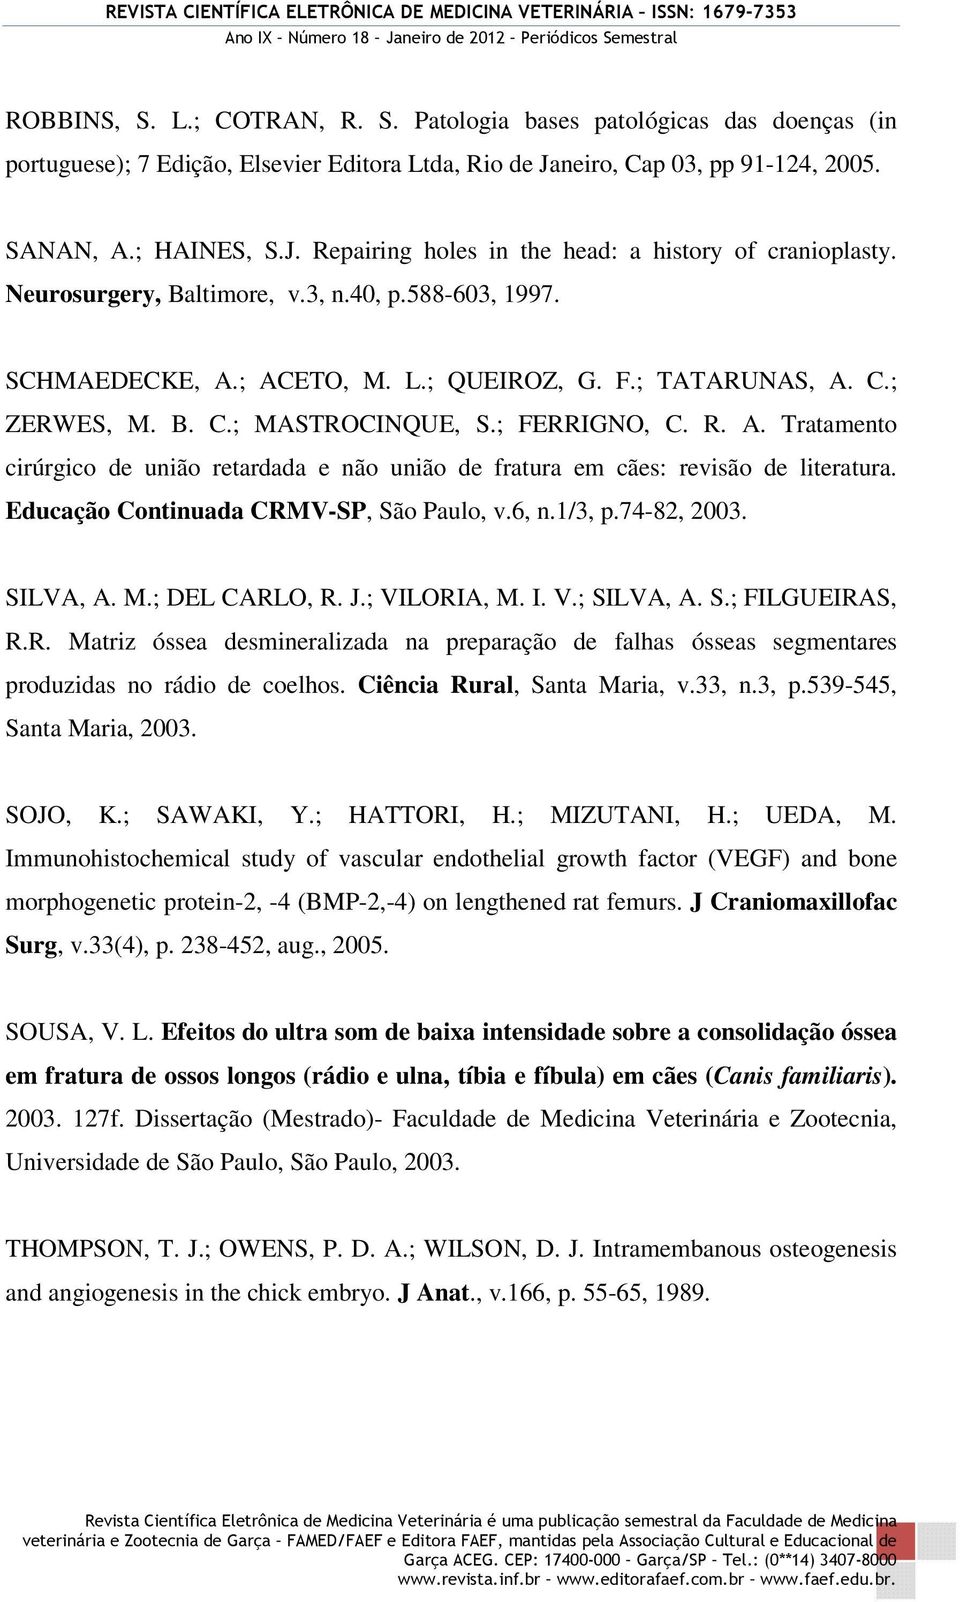 Educação Continuada CRMV-SP, São Paulo, v.6, n.1/3, p.74-82, 2003. SILVA, A. M.; DEL CARLO, R. J.; VILORIA, M. I. V.; SILVA, A. S.; FILGUEIRAS, R.R. Matriz óssea desmineralizada na preparação de falhas ósseas segmentares produzidas no rádio de coelhos.